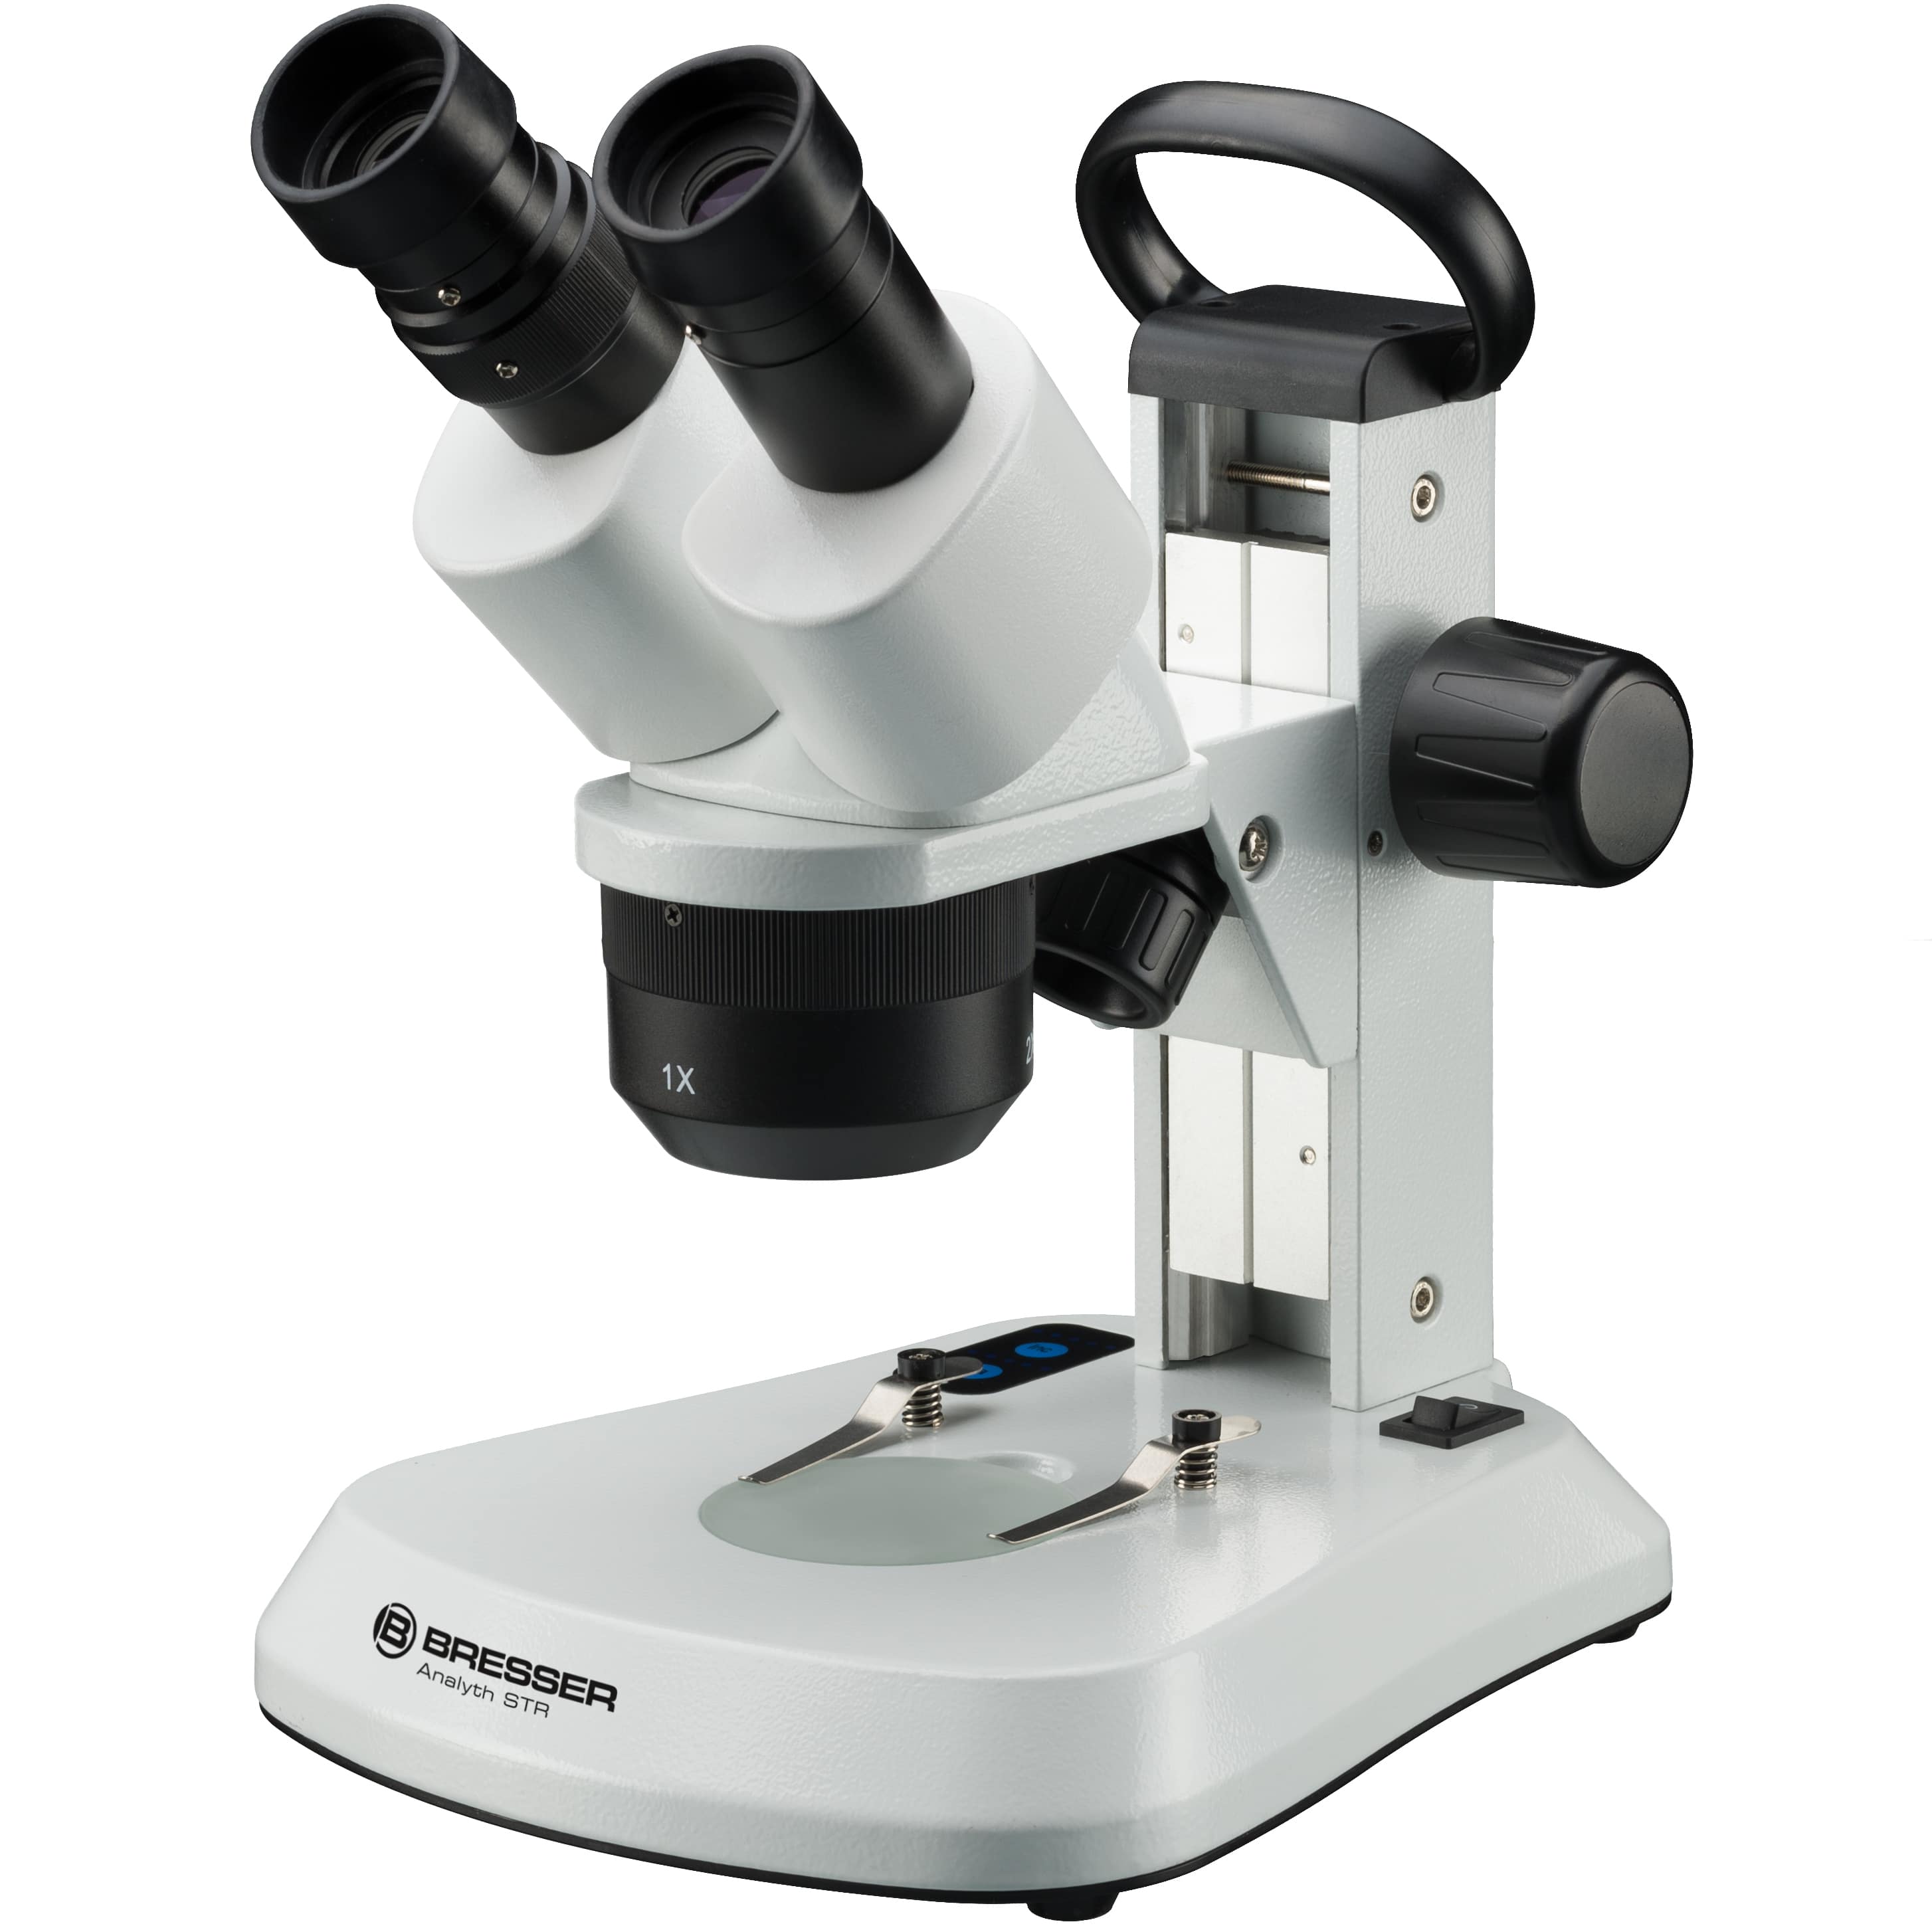   Stereomicroscopio con obiettivi per 3 ingrandimenti diversi  